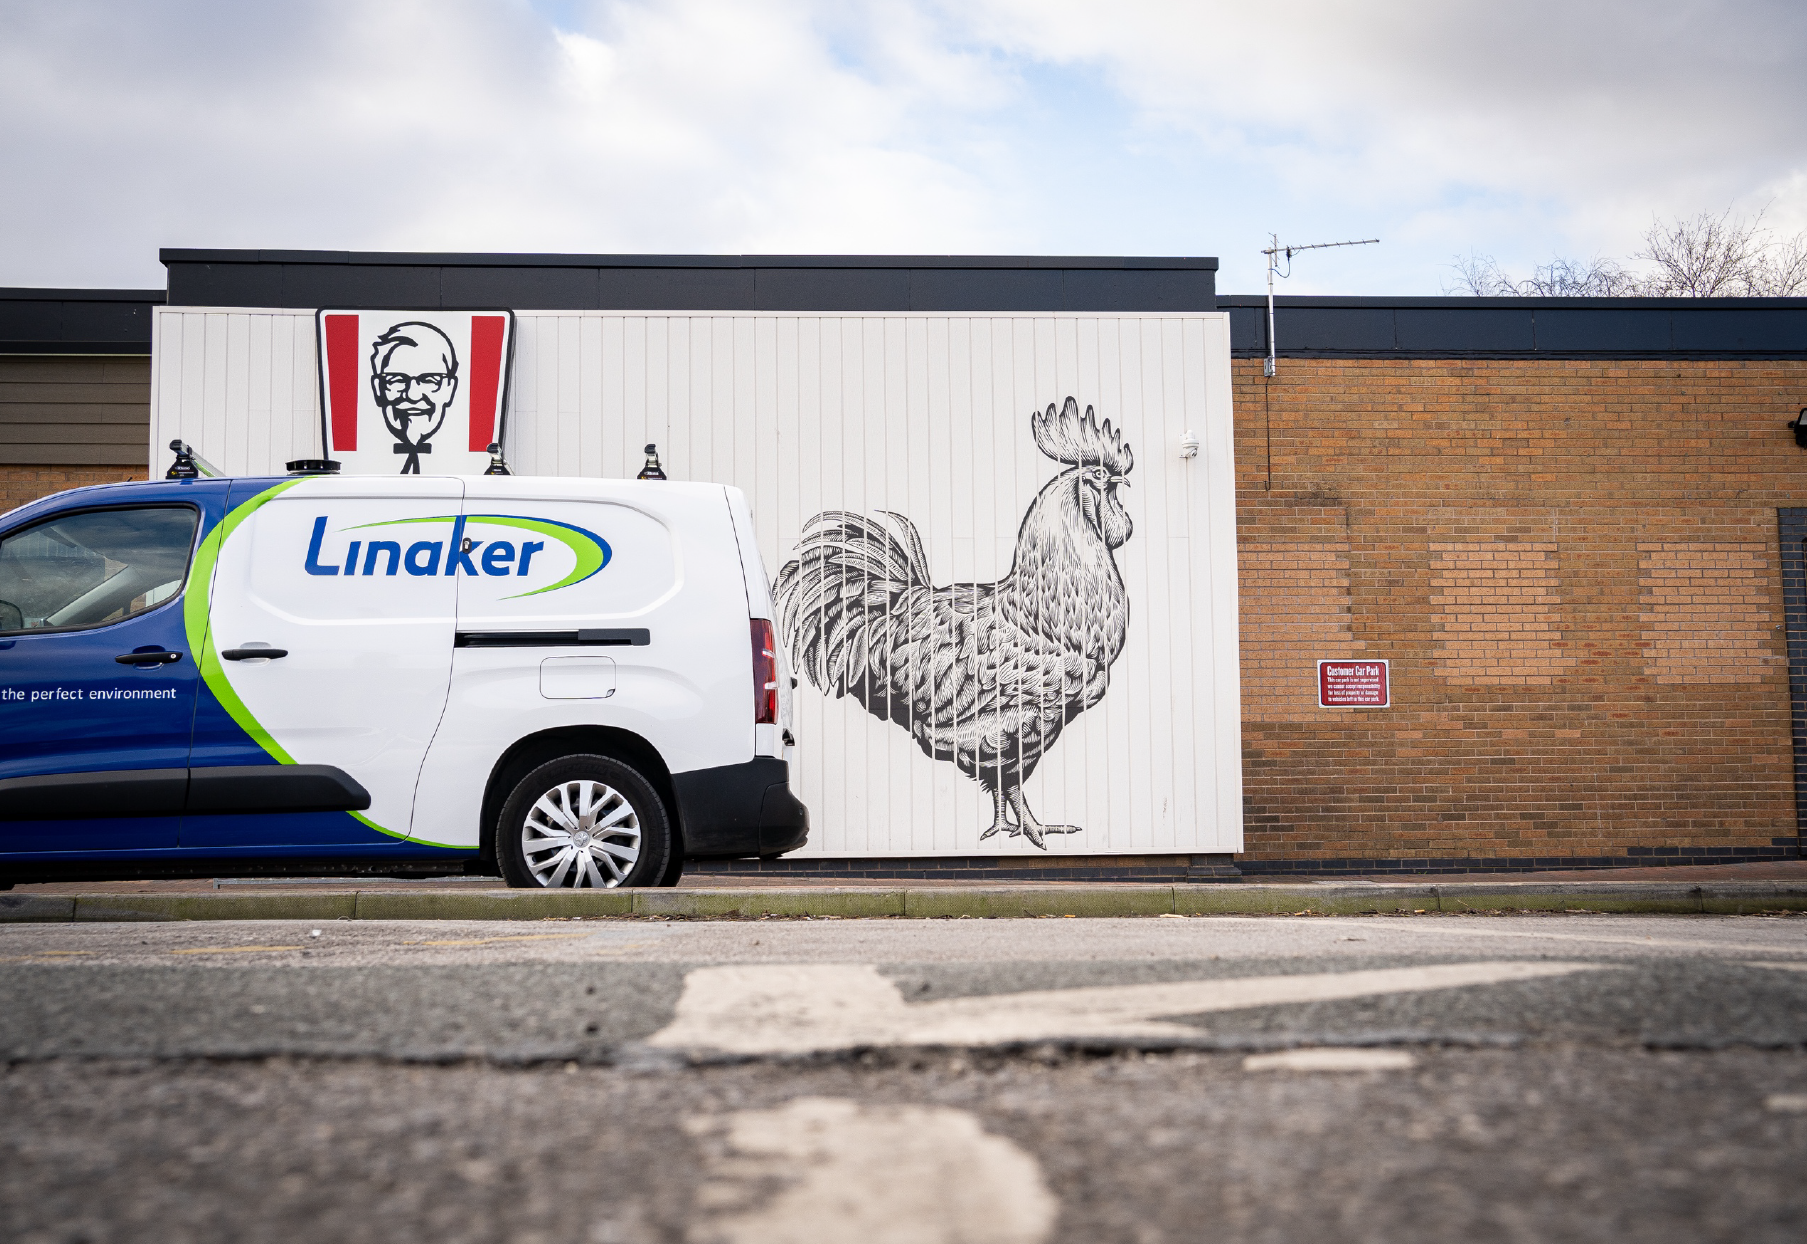 A Linaker van next to KFC branding